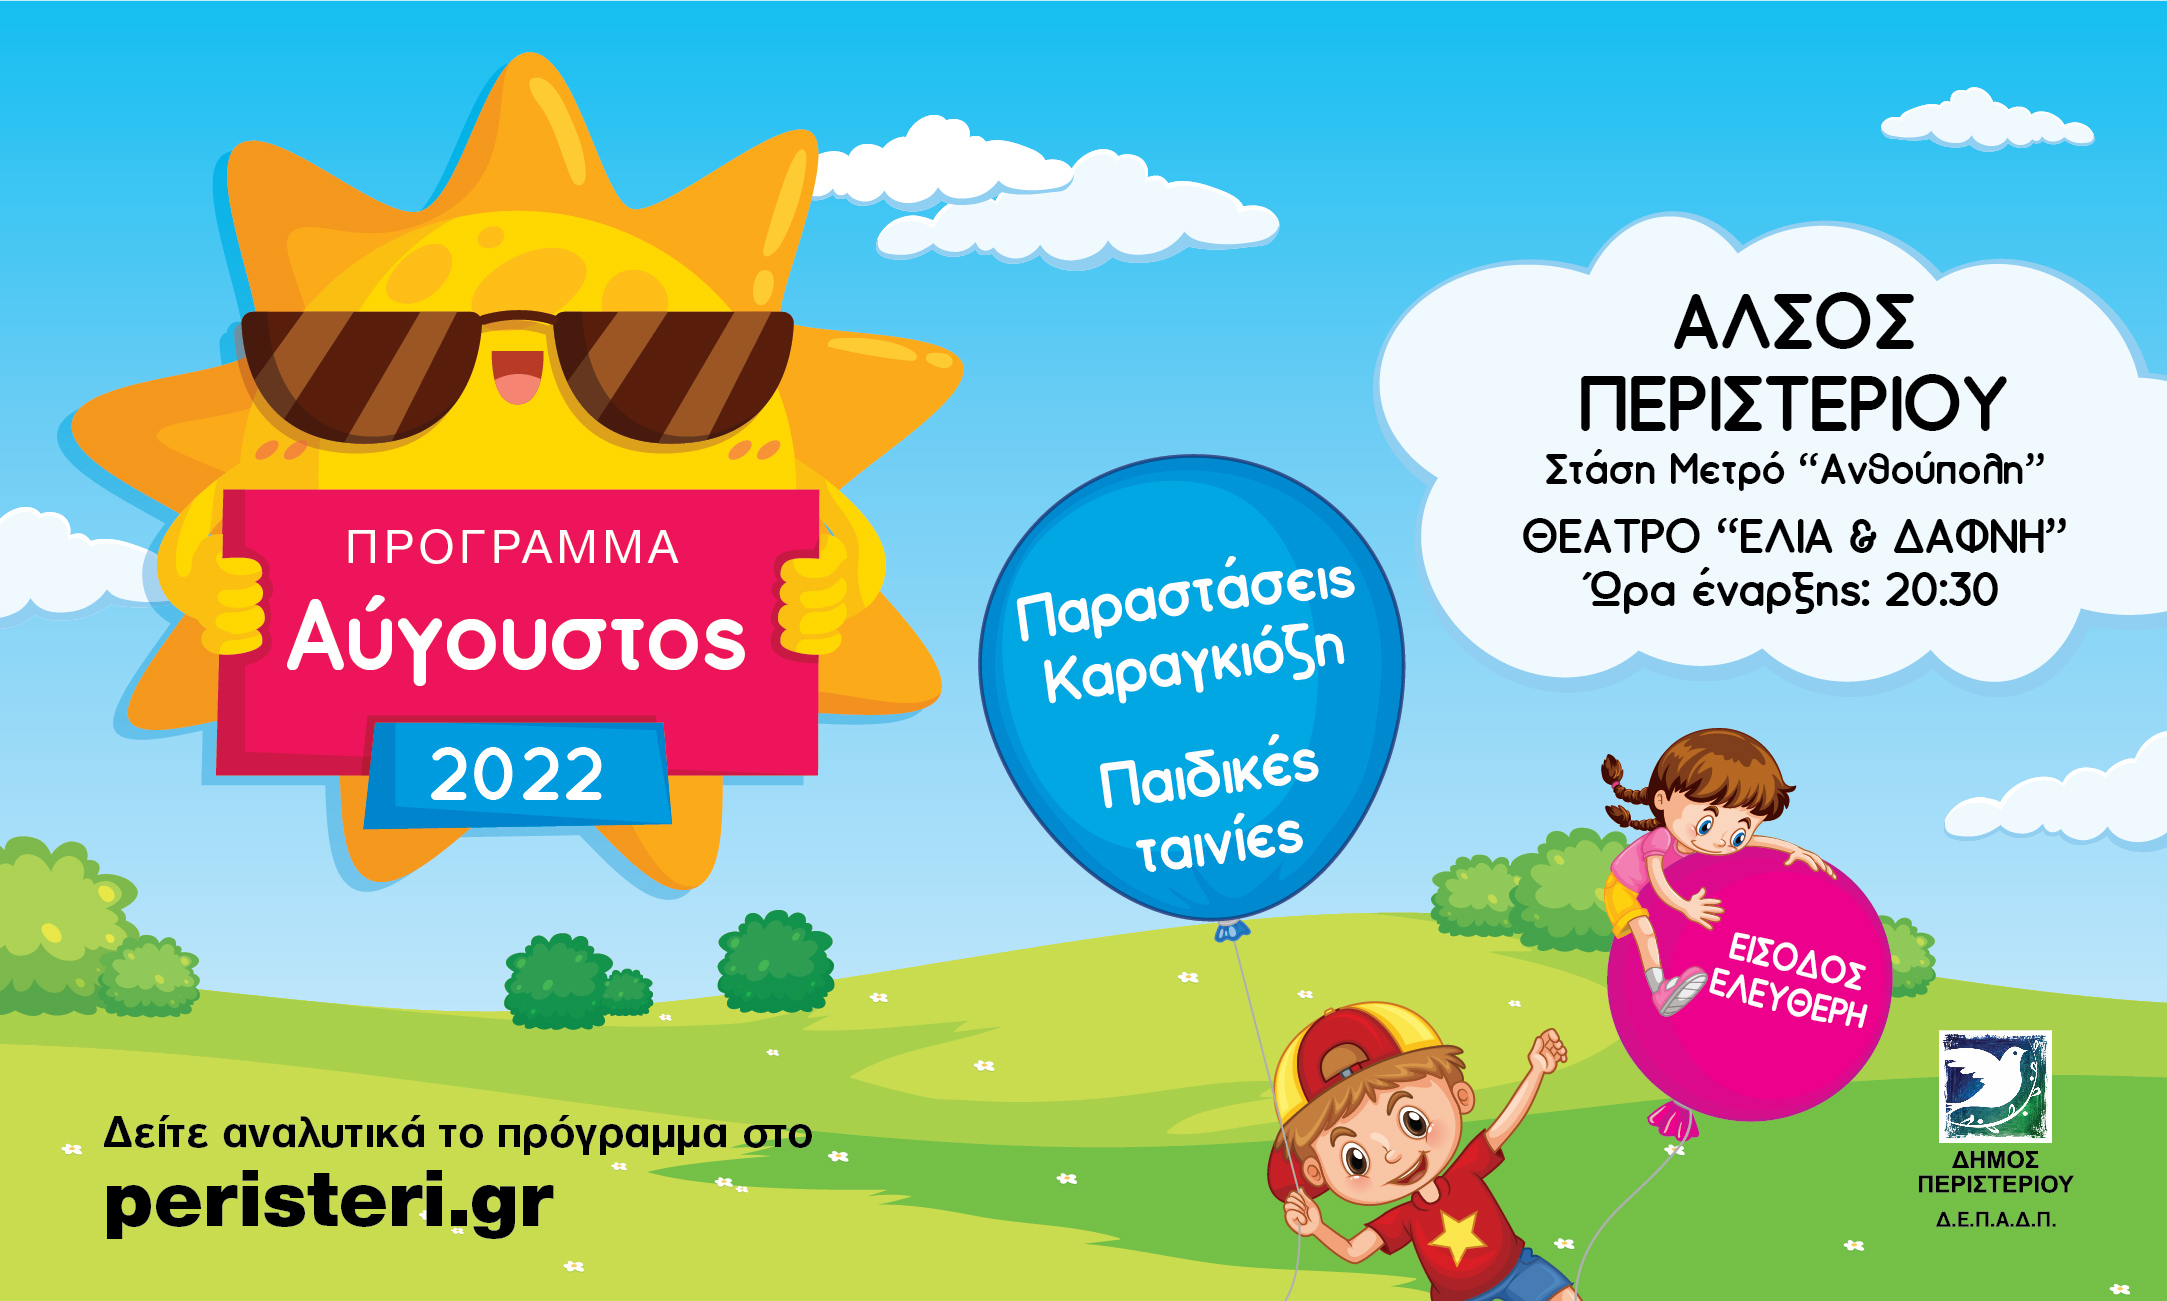  Παραστάσεις Καραγκιόζη & προβολές παιδικών ταινιών τον Αύγουστο 2022 στο Άλσος Περιστερίου